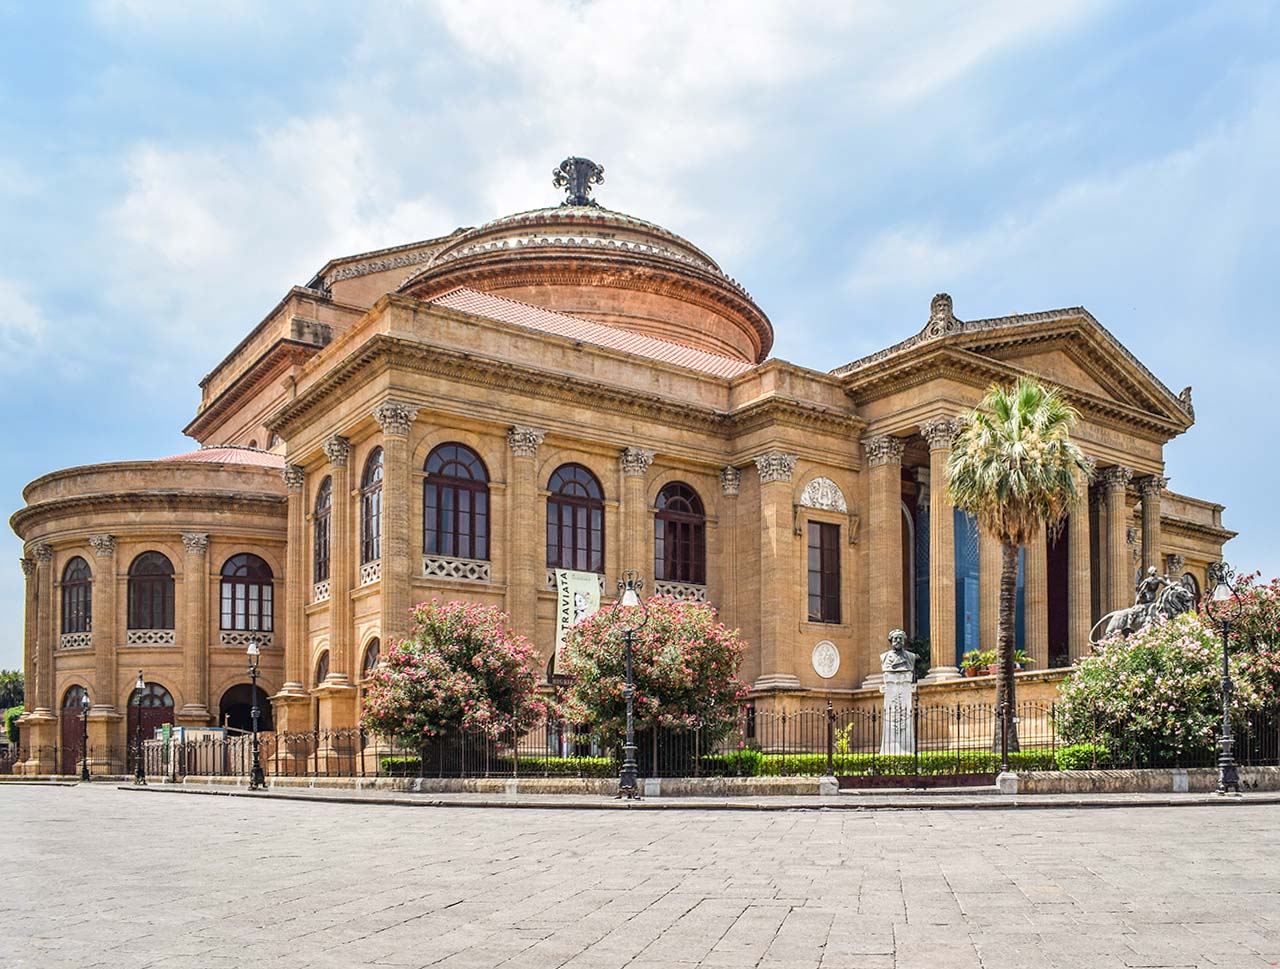 Teatro Massimo in Palermo